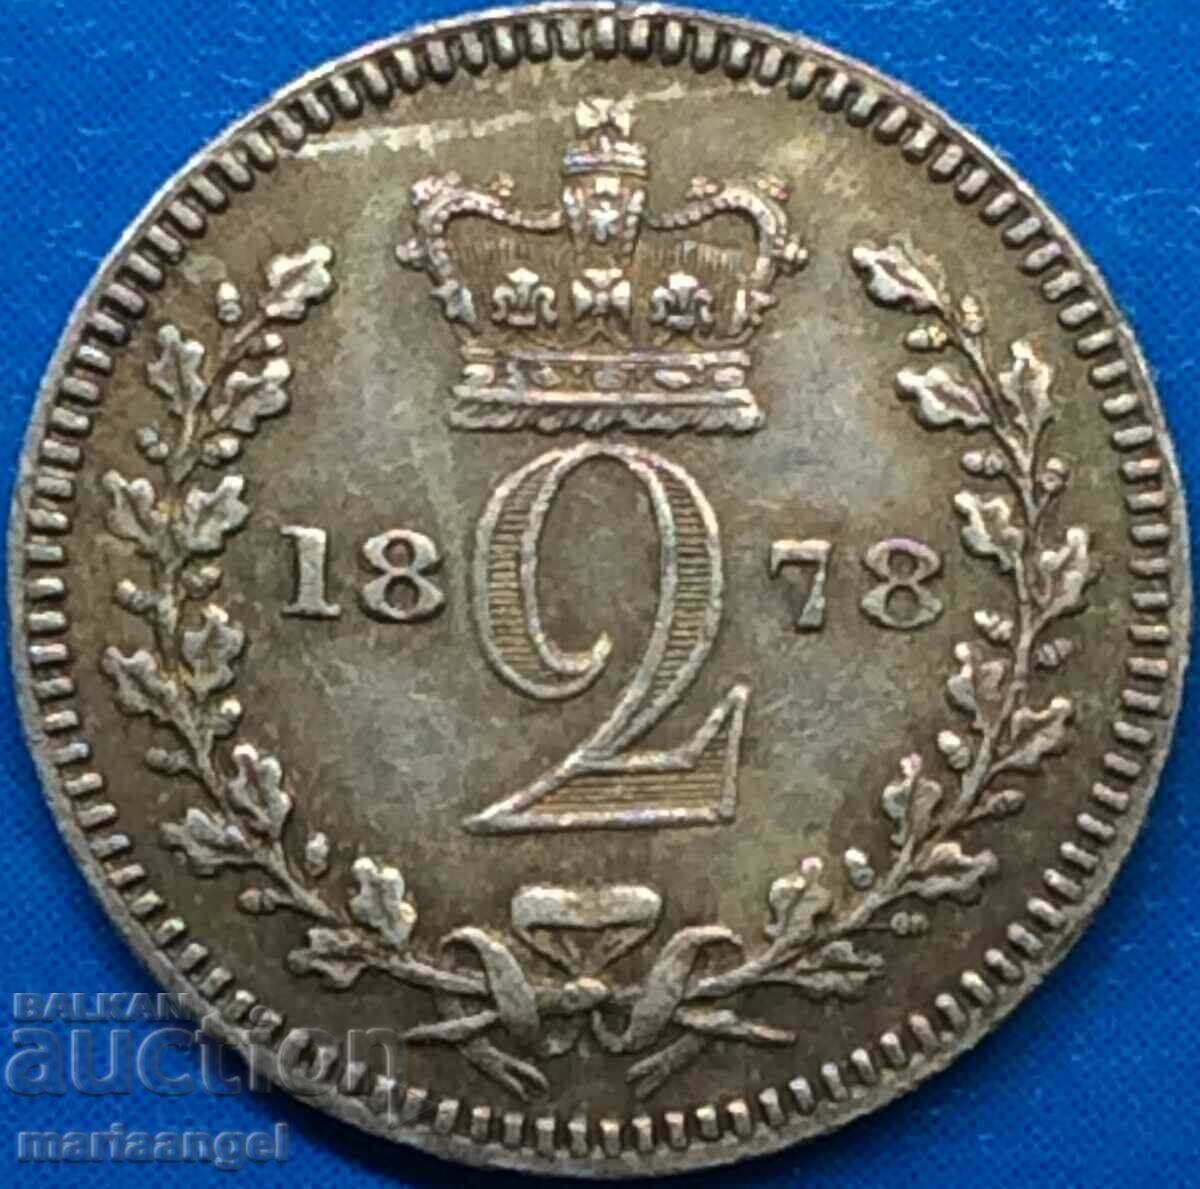 Marea Britanie 2 Pence 1878 Moundy Victoria RARE Argint